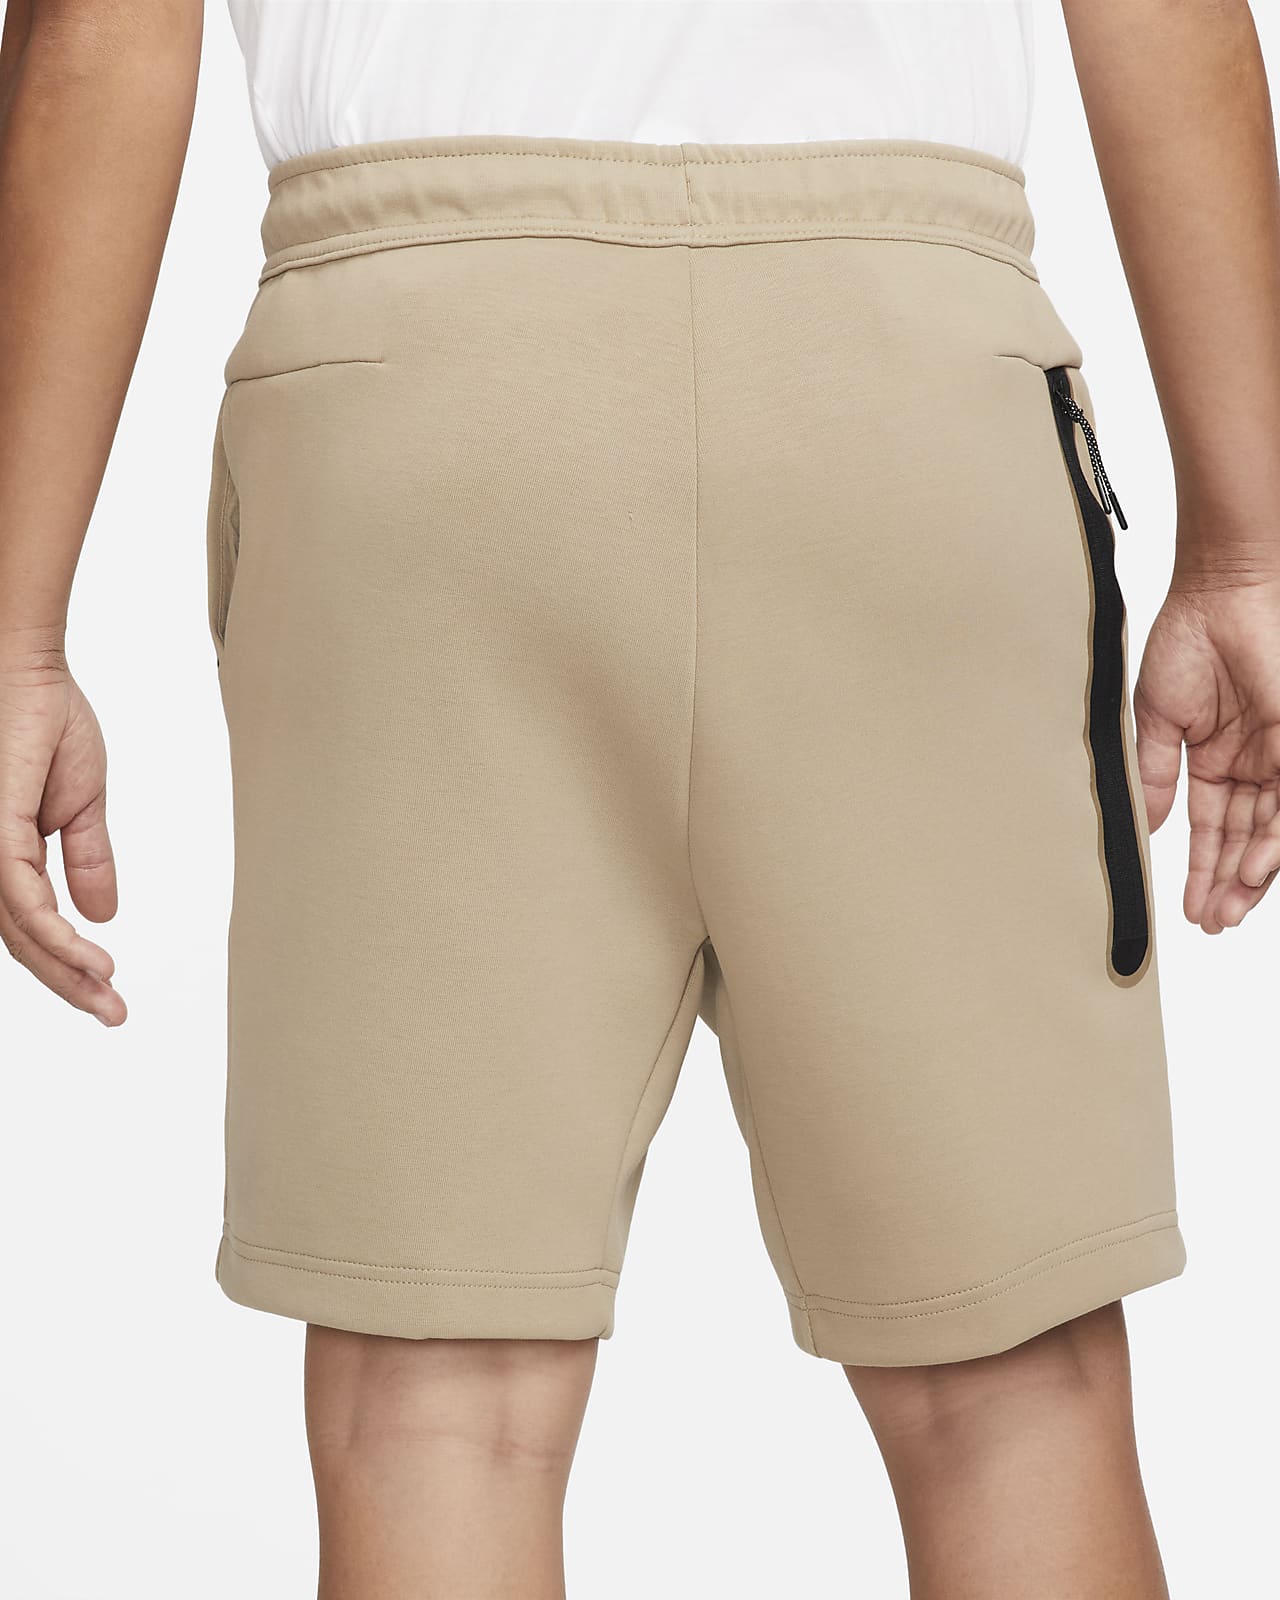 Sportswear Tech Fleece Pantalón corto Hombre. Nike ES